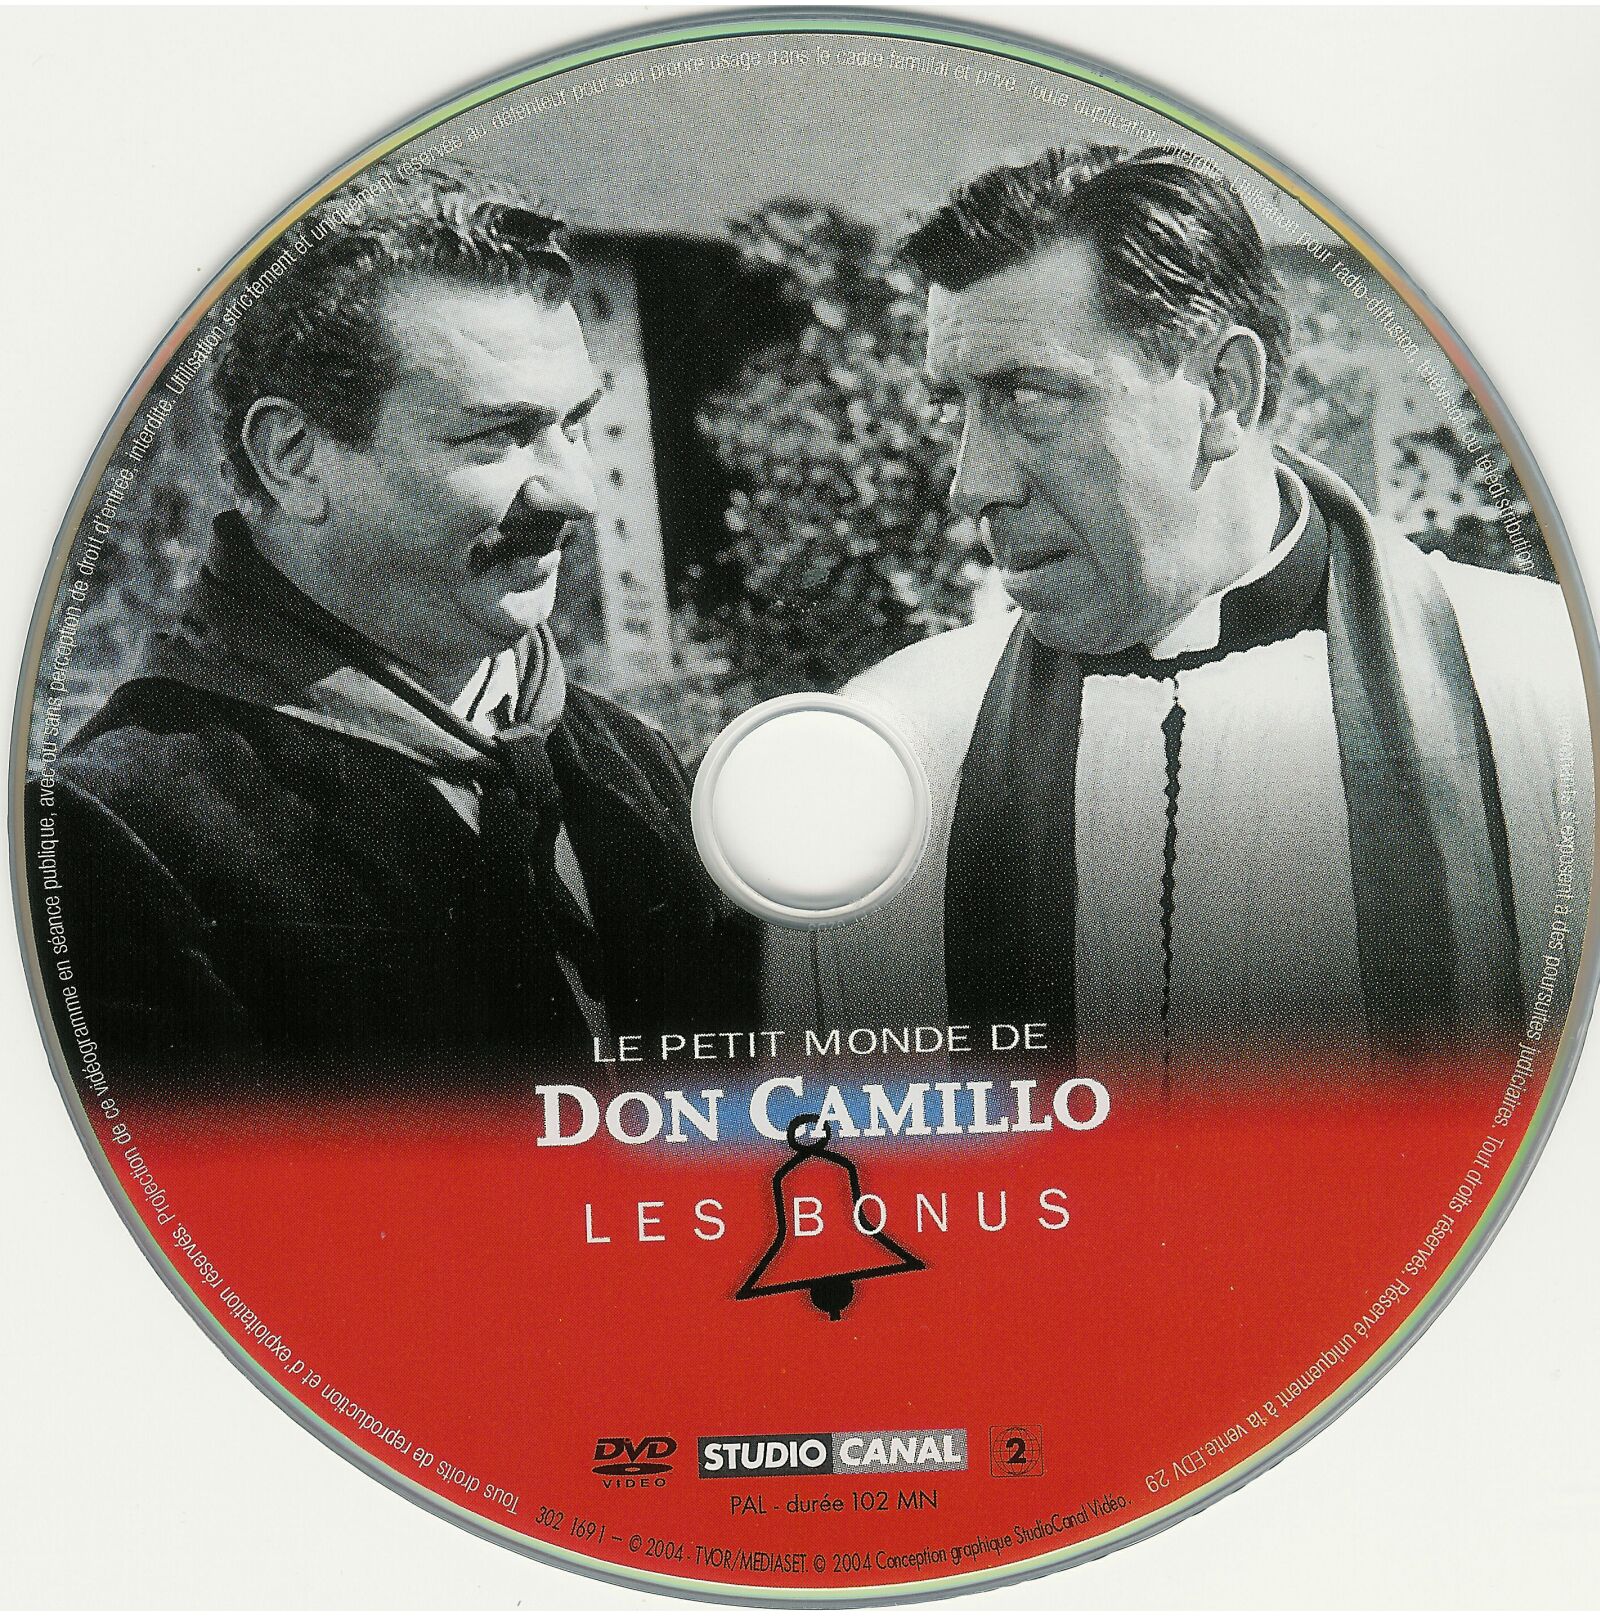 Don Camillo - Le Petit Monde de Don Camillo (bonus)